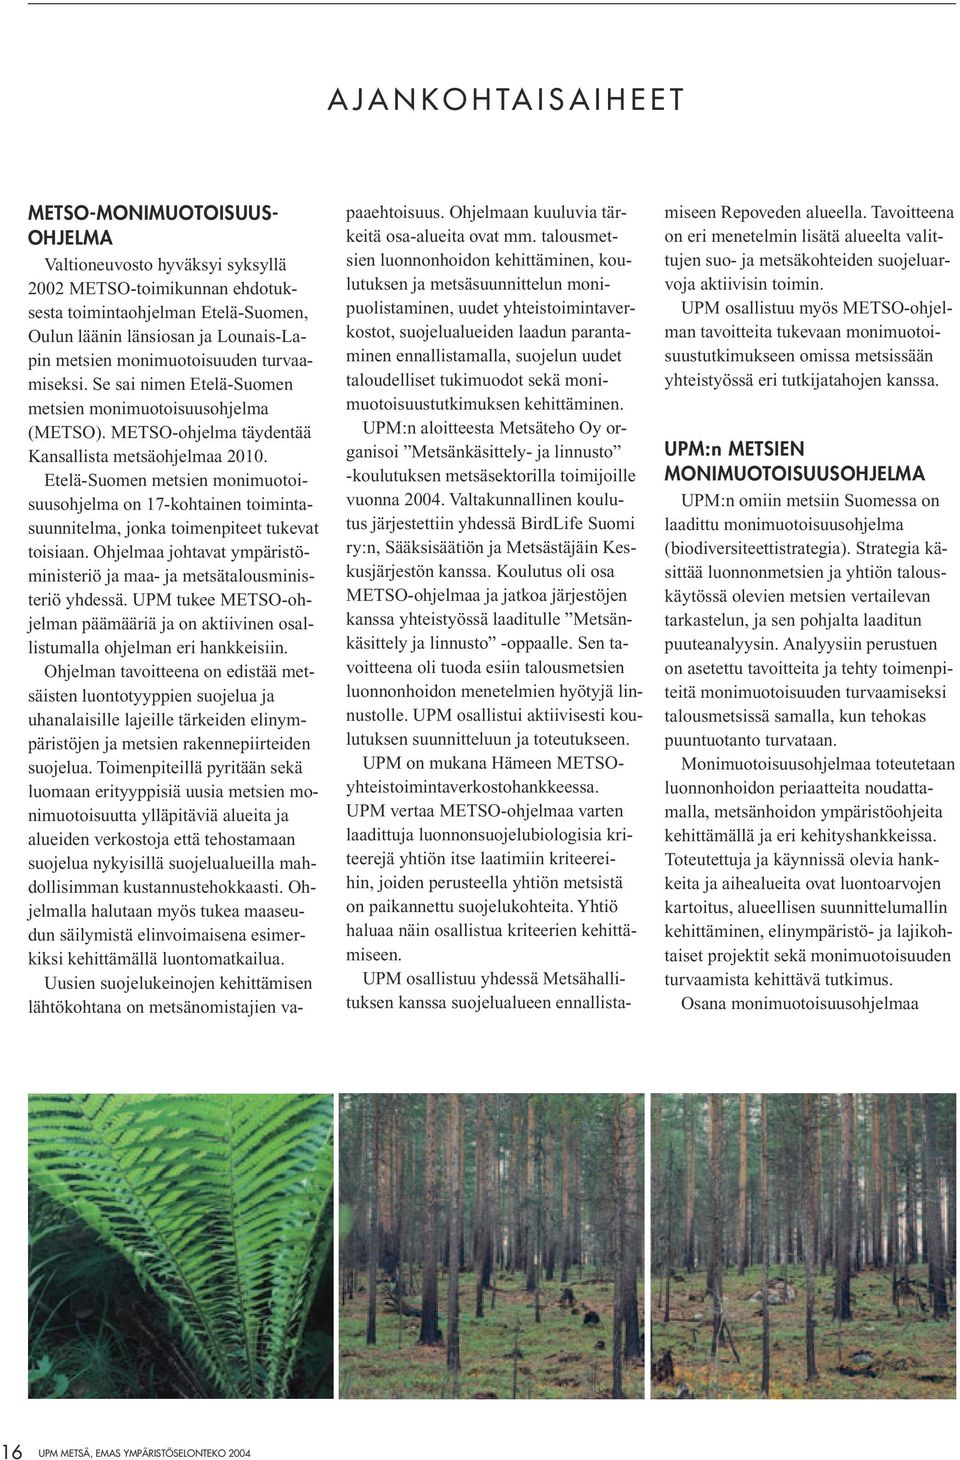 taloudelliset tukimuodot sekä monimuotoisuustutkimuksen kehittäminen. UPM:n aloitteesta Metsäteho Oy organisoi Metsänkäsittely- ja linnusto -koulutuksen metsäsektorilla toimijoille vuonna 2004.